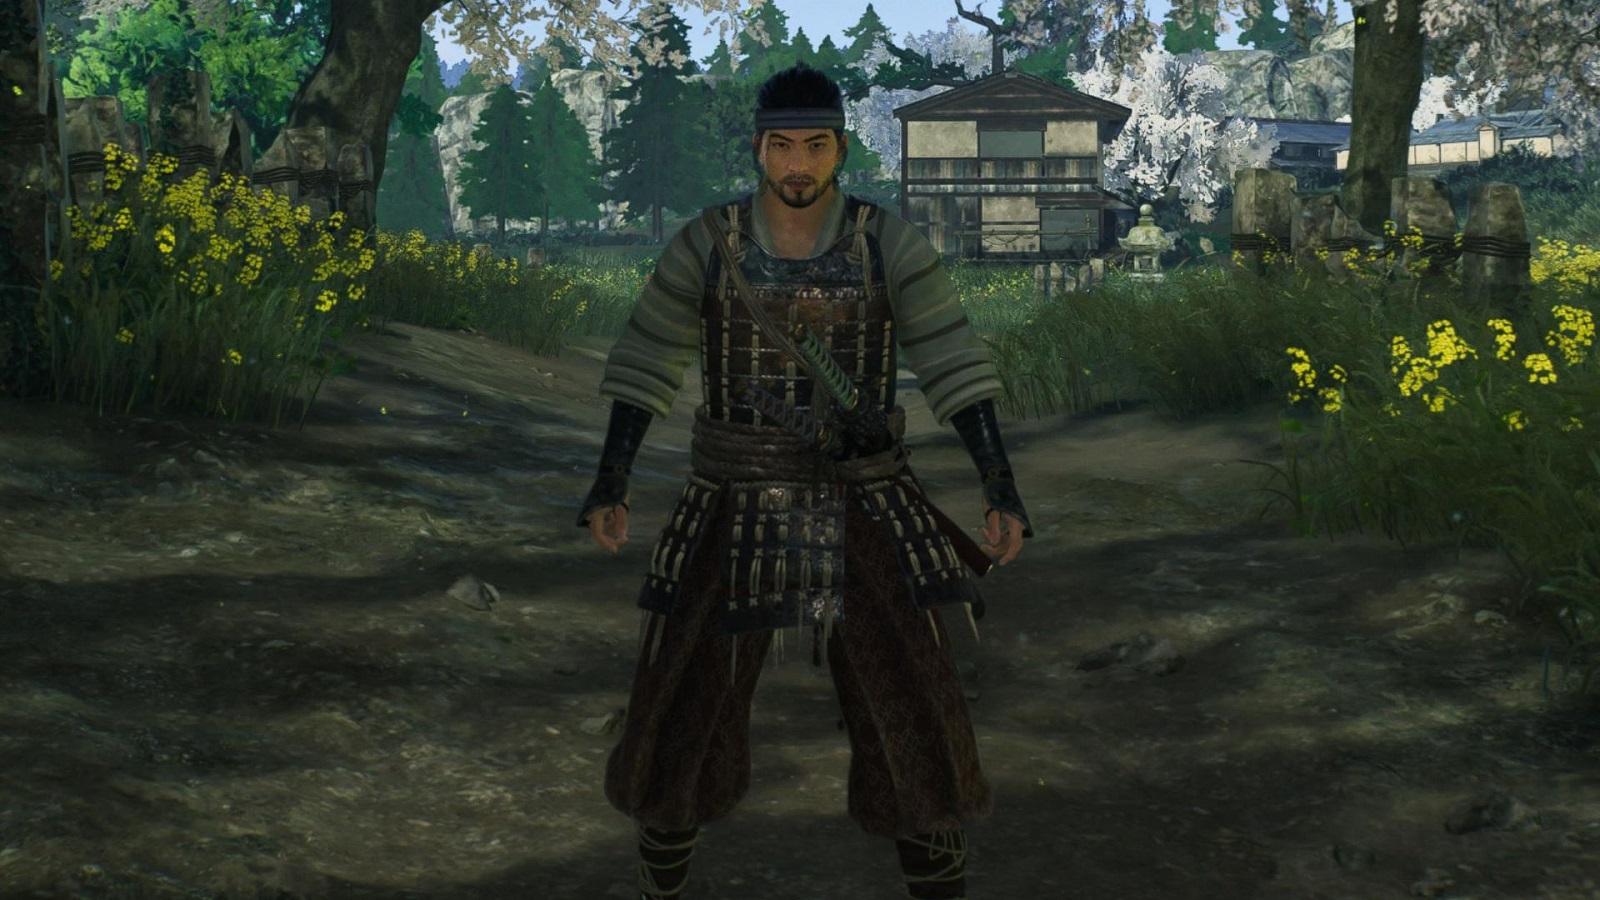 Ronin in samurai attire